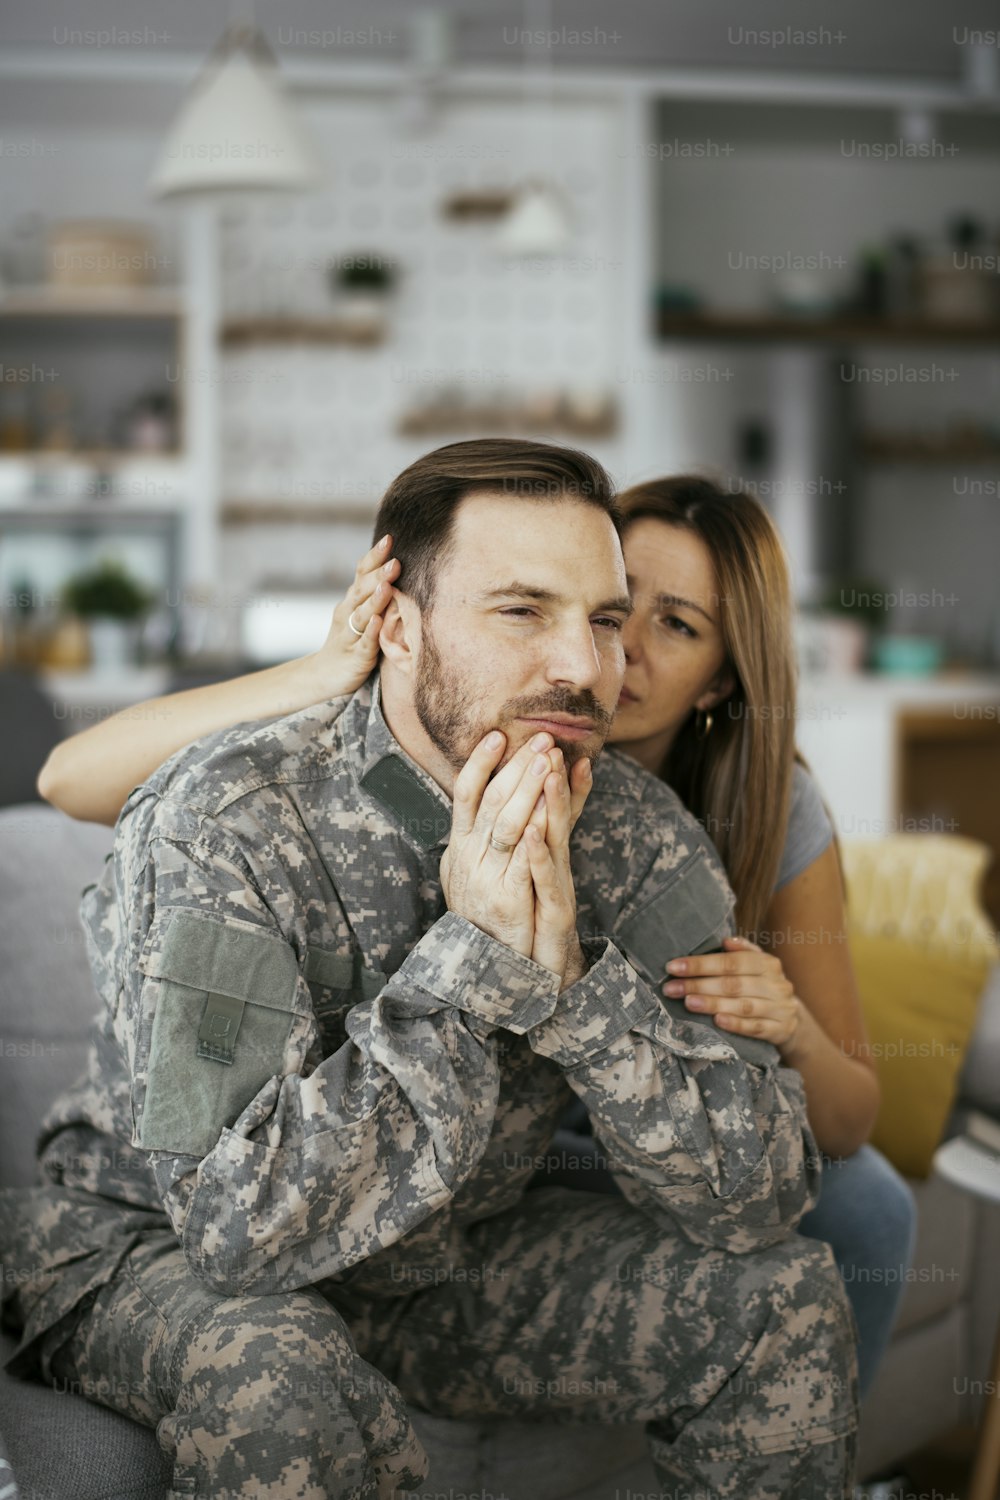 우울한 군인이 거실 소파에 앉아 있다. PTSD를 가진 젊은 해병